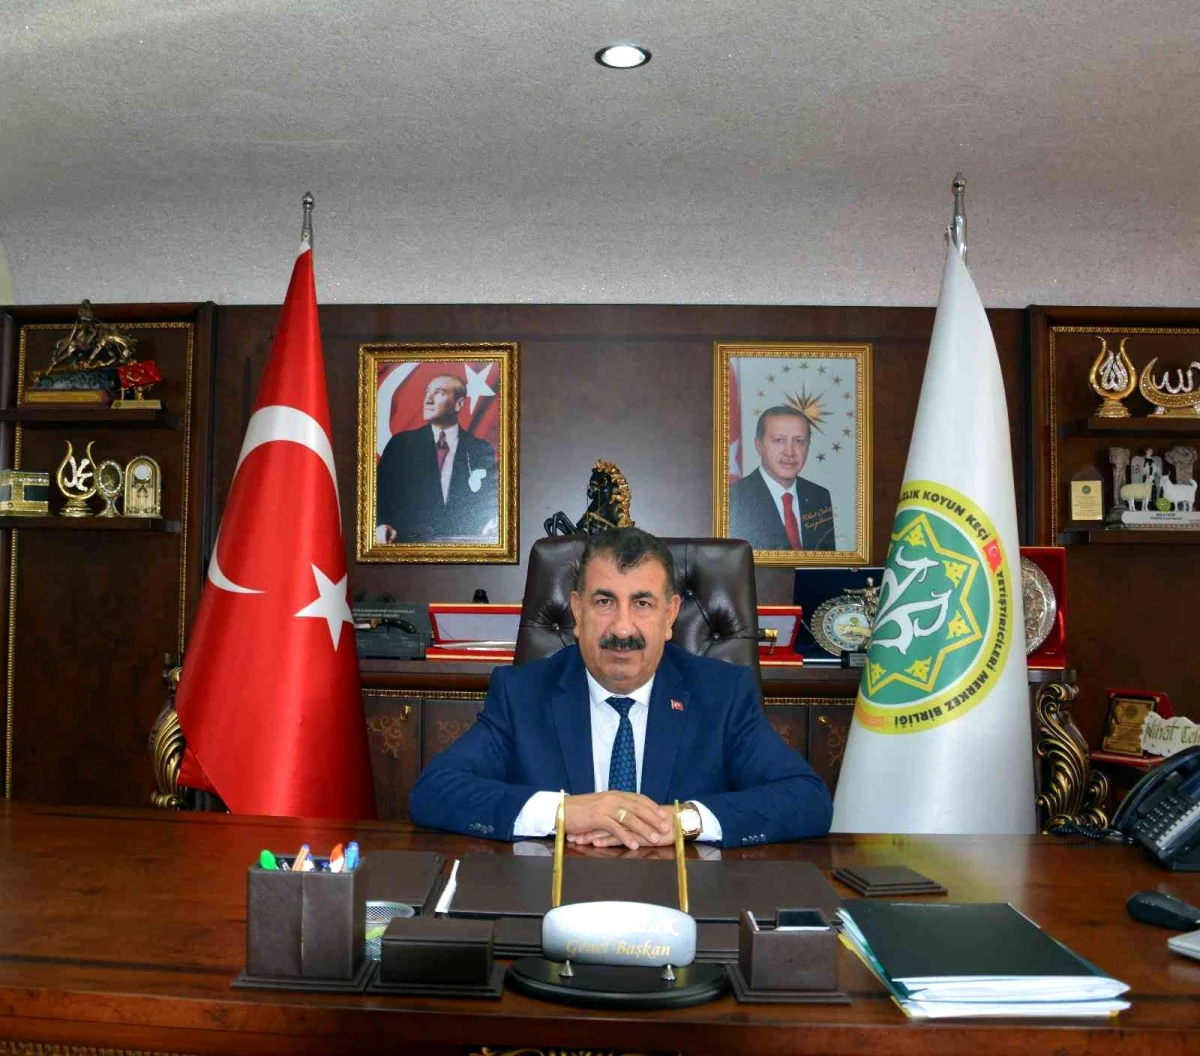 TÜDKİYEB Genel Başkanı Çelik, "tarımsal öğretimin başlamasının 176. yılını" kutladı Açıklaması